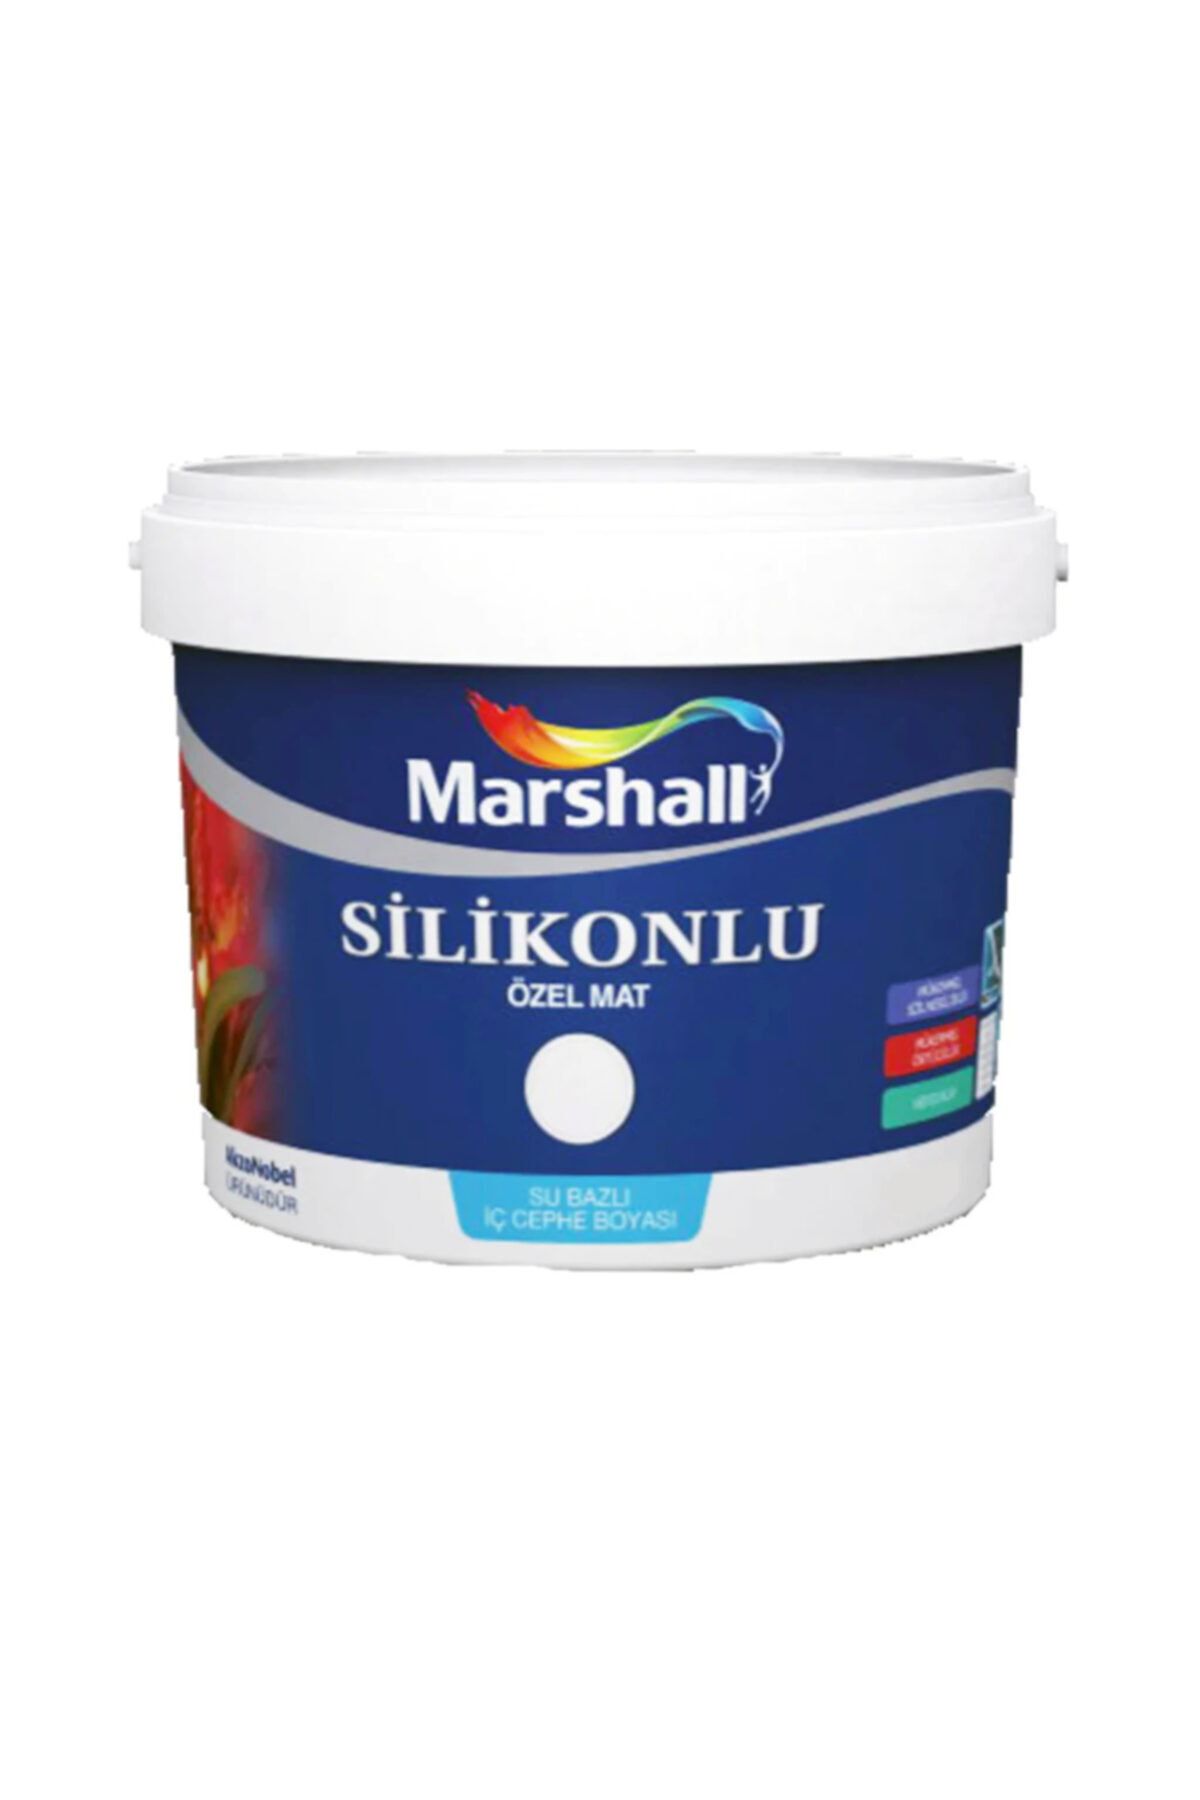 Marshall Silikonlu Özel Mat Iç Cephe Duvar Boyası 15 Lt 20 Kg Beyaz